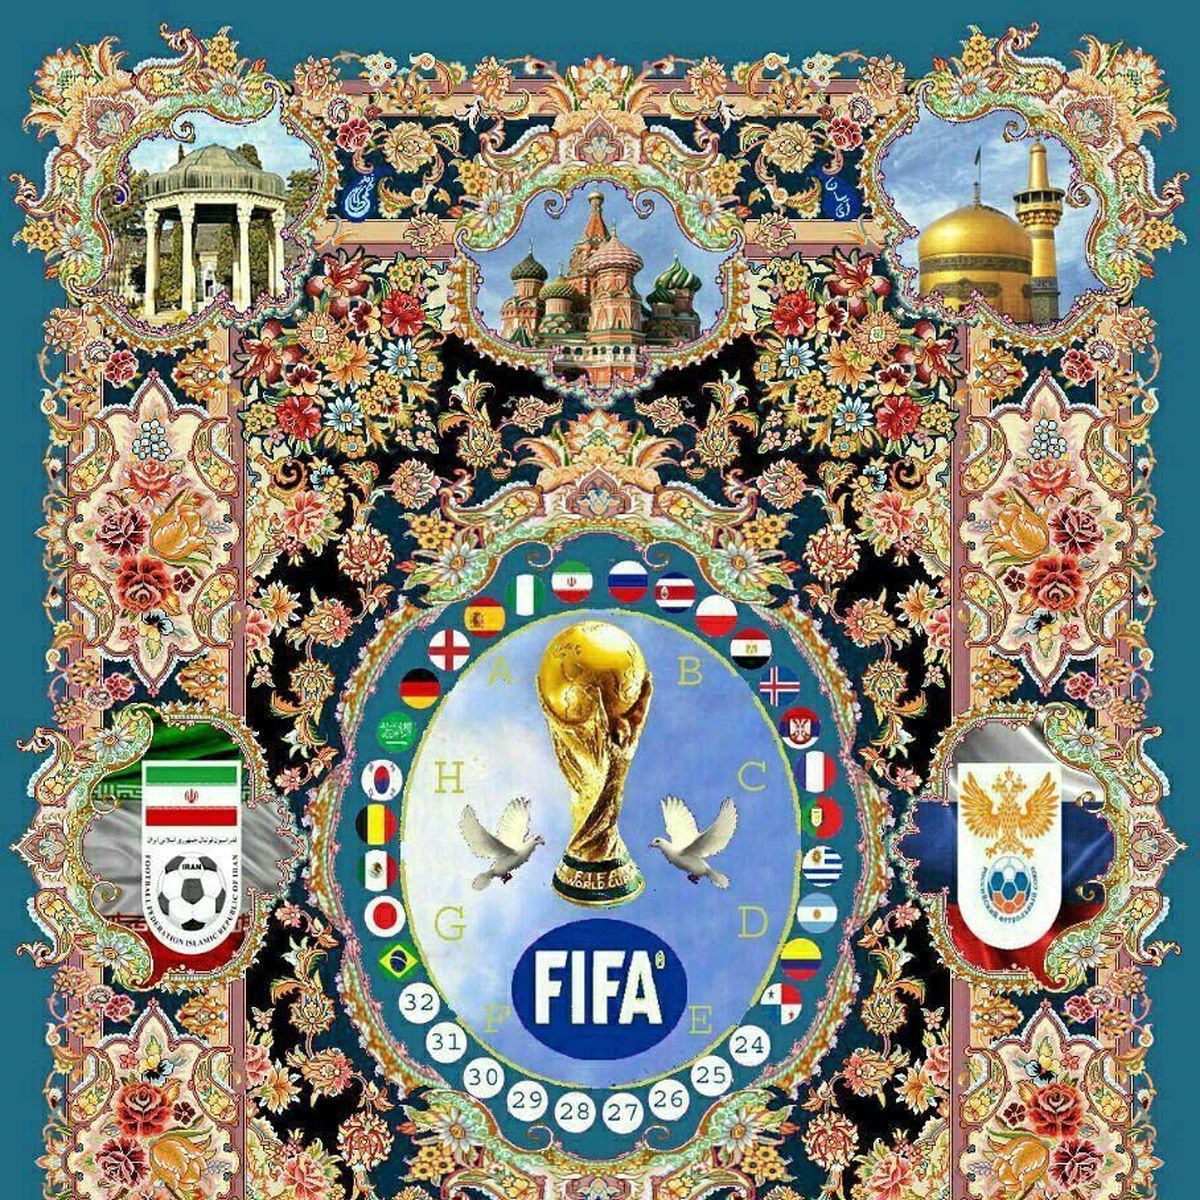 هنرمند ایرانی فرش جام جهانی 2018 را بافت